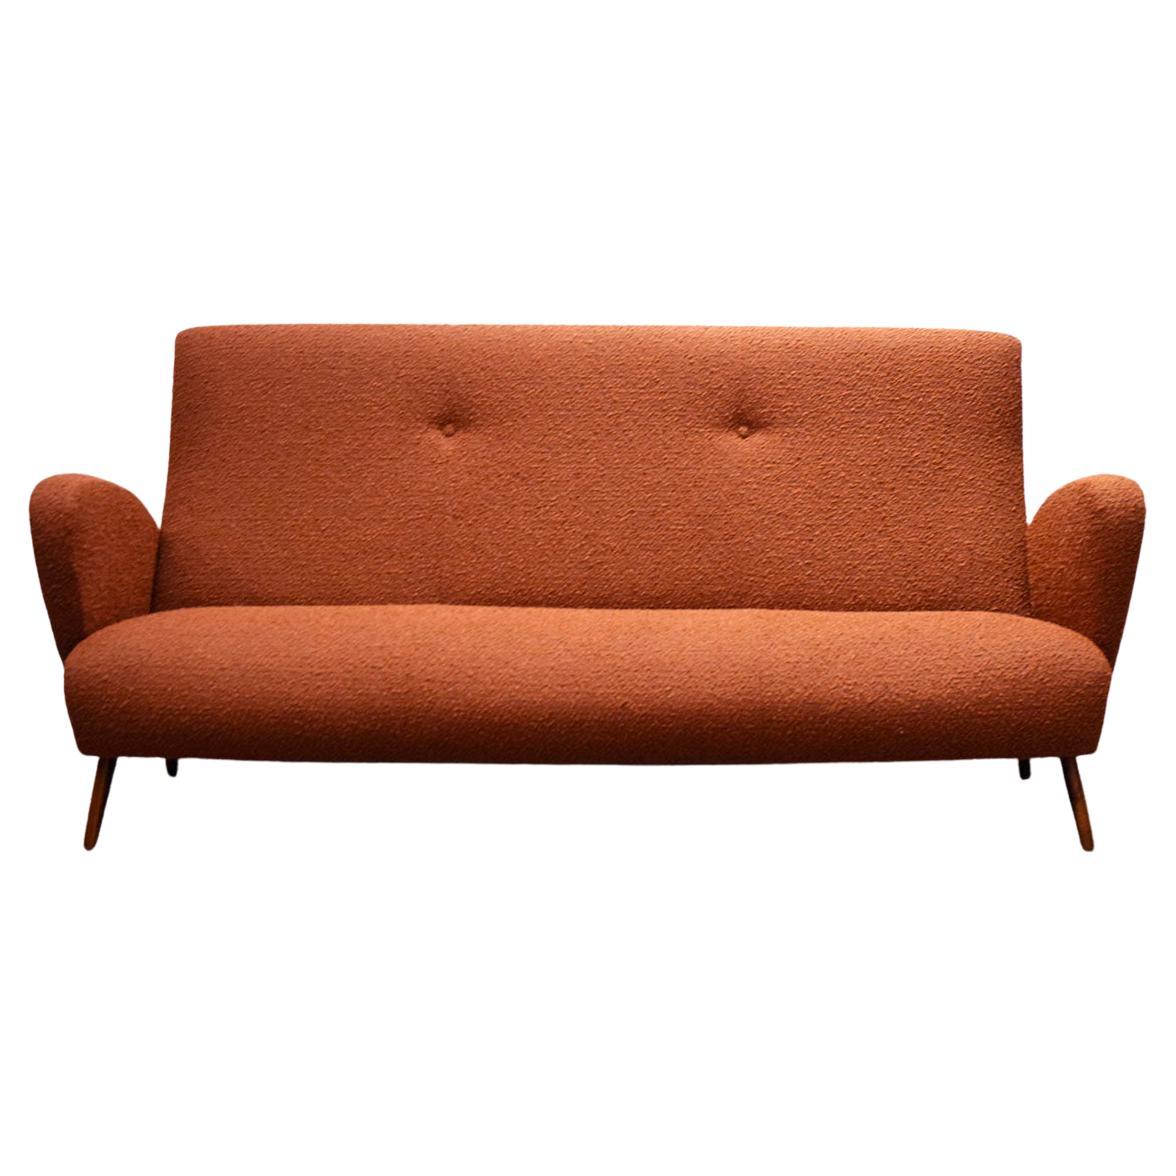 Dreisitziges Sofa aus italienischer Produktion, 1950er Jahre